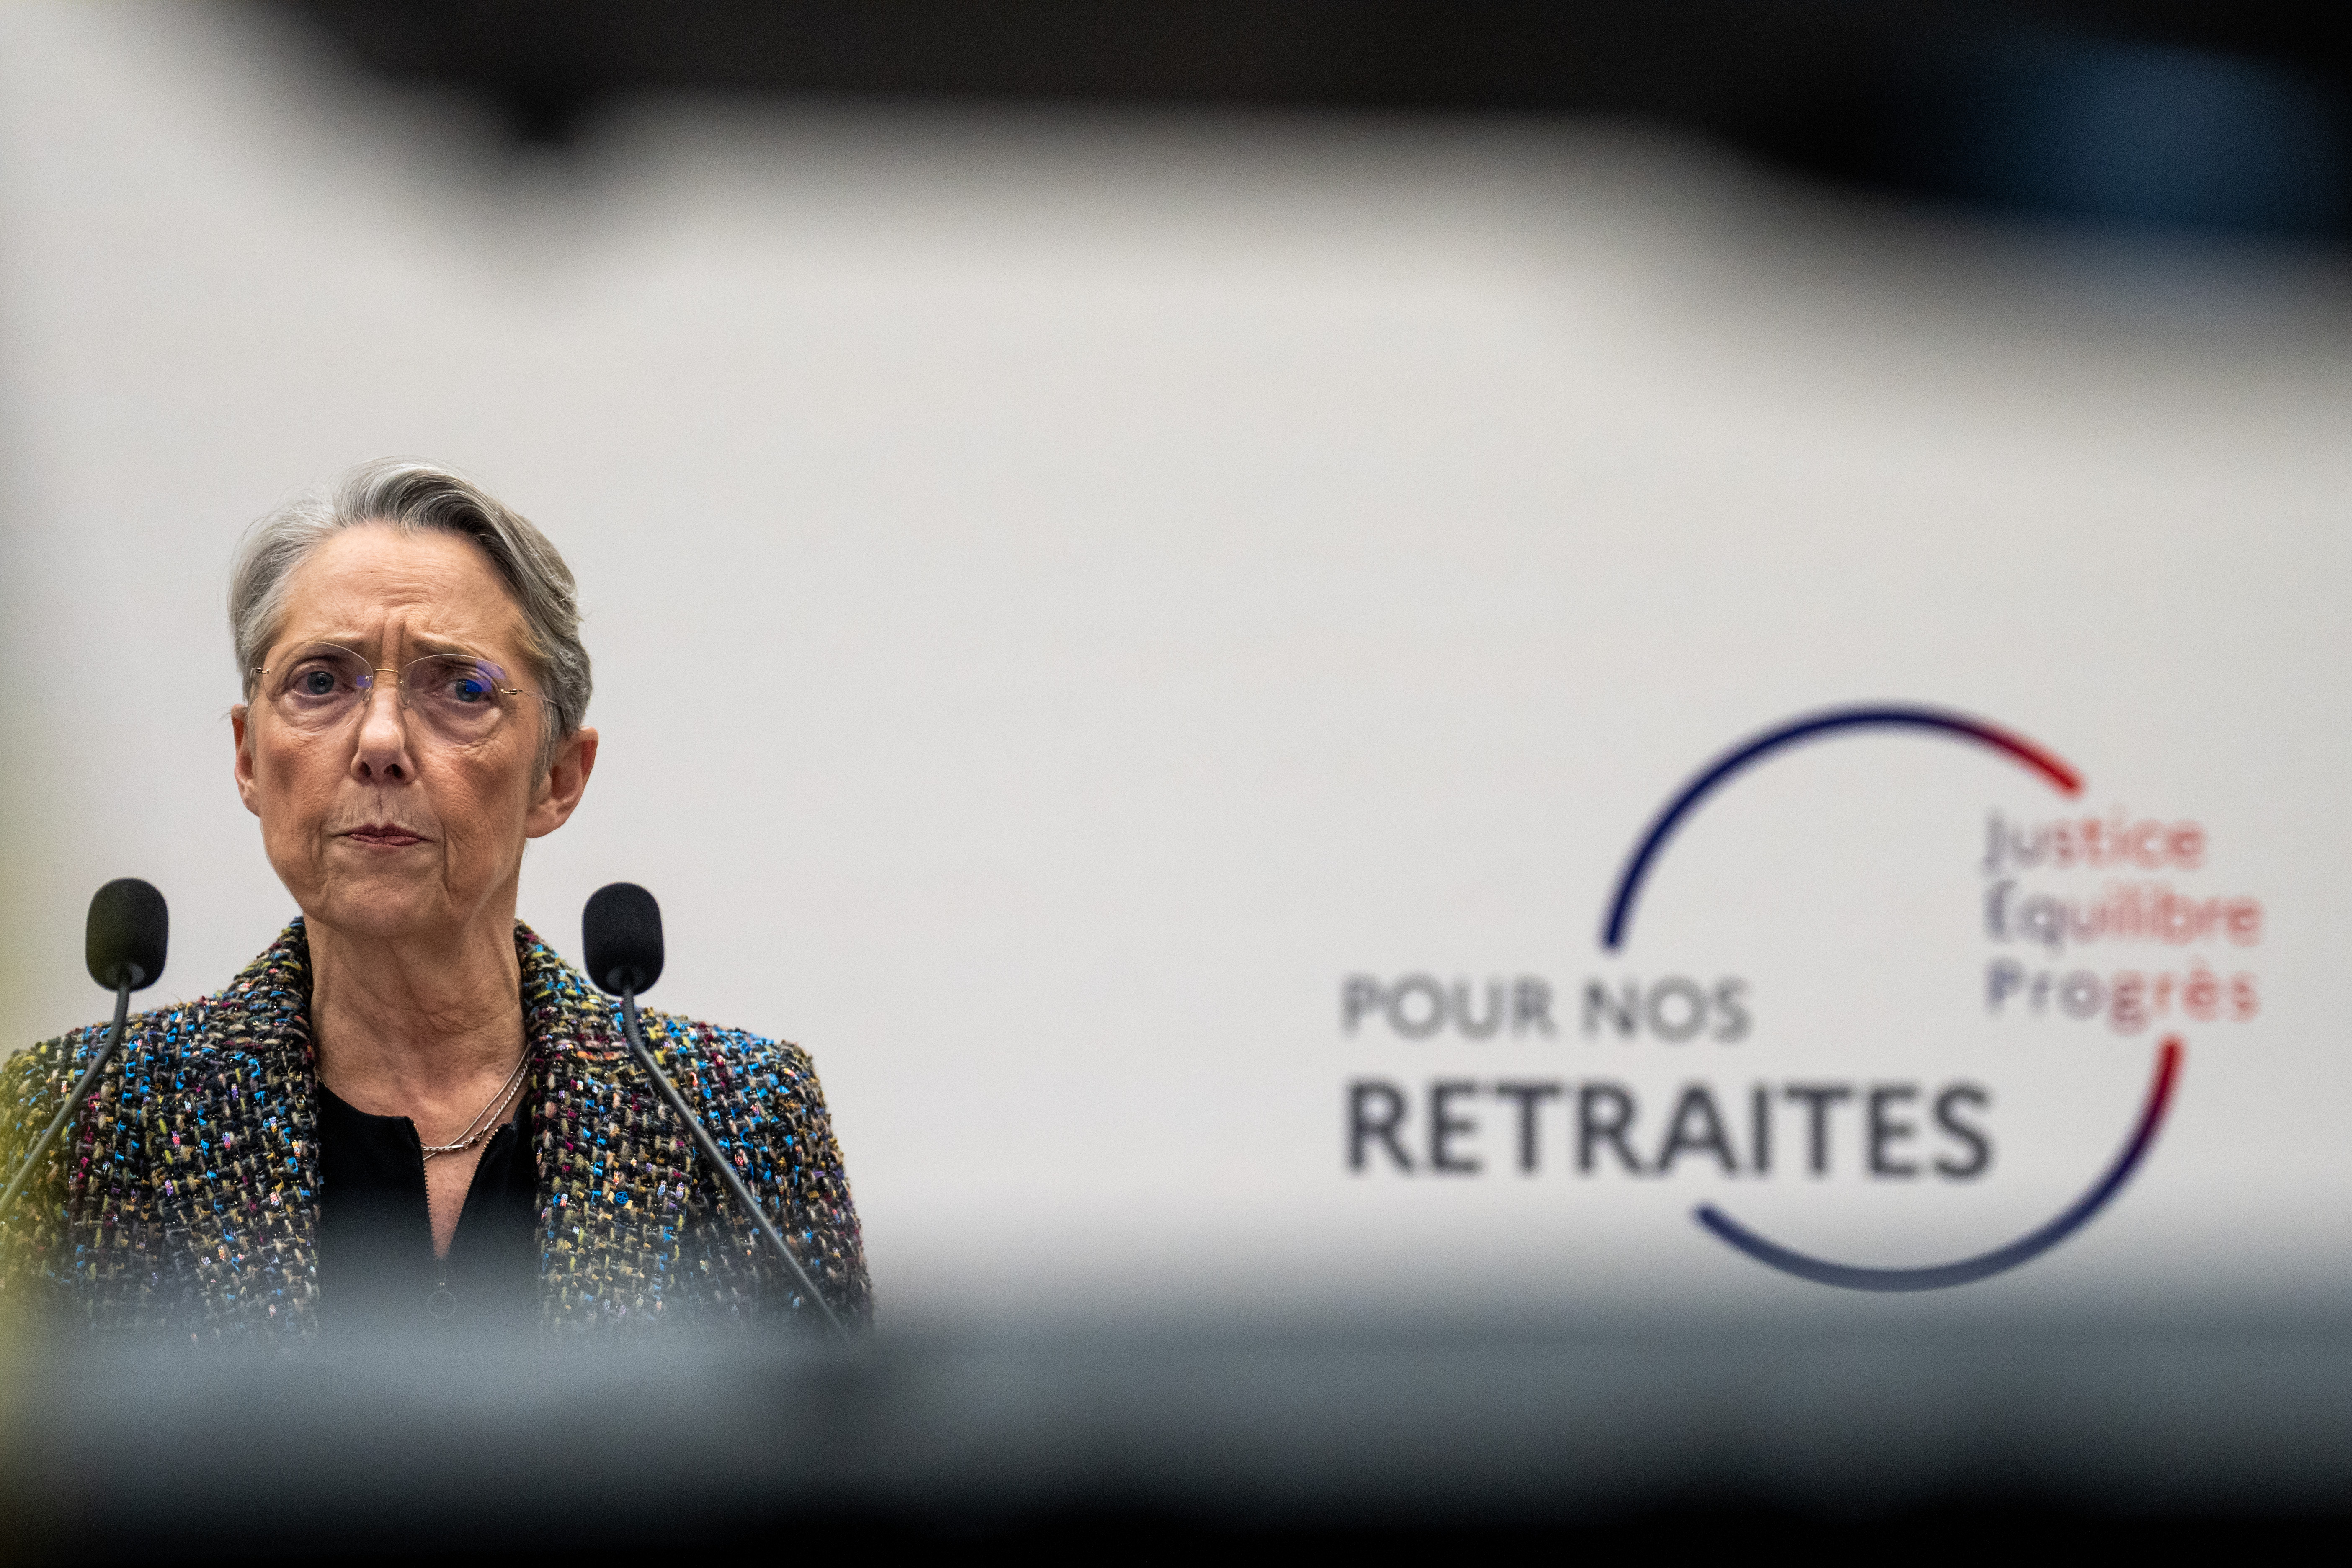 La Première ministre, Élisabeth Borne, lors de la conférence de presse de présentation du projet du gouvernement sur la réforme des retraites / Photographie par Xose Bouzas / Hans Lucas.